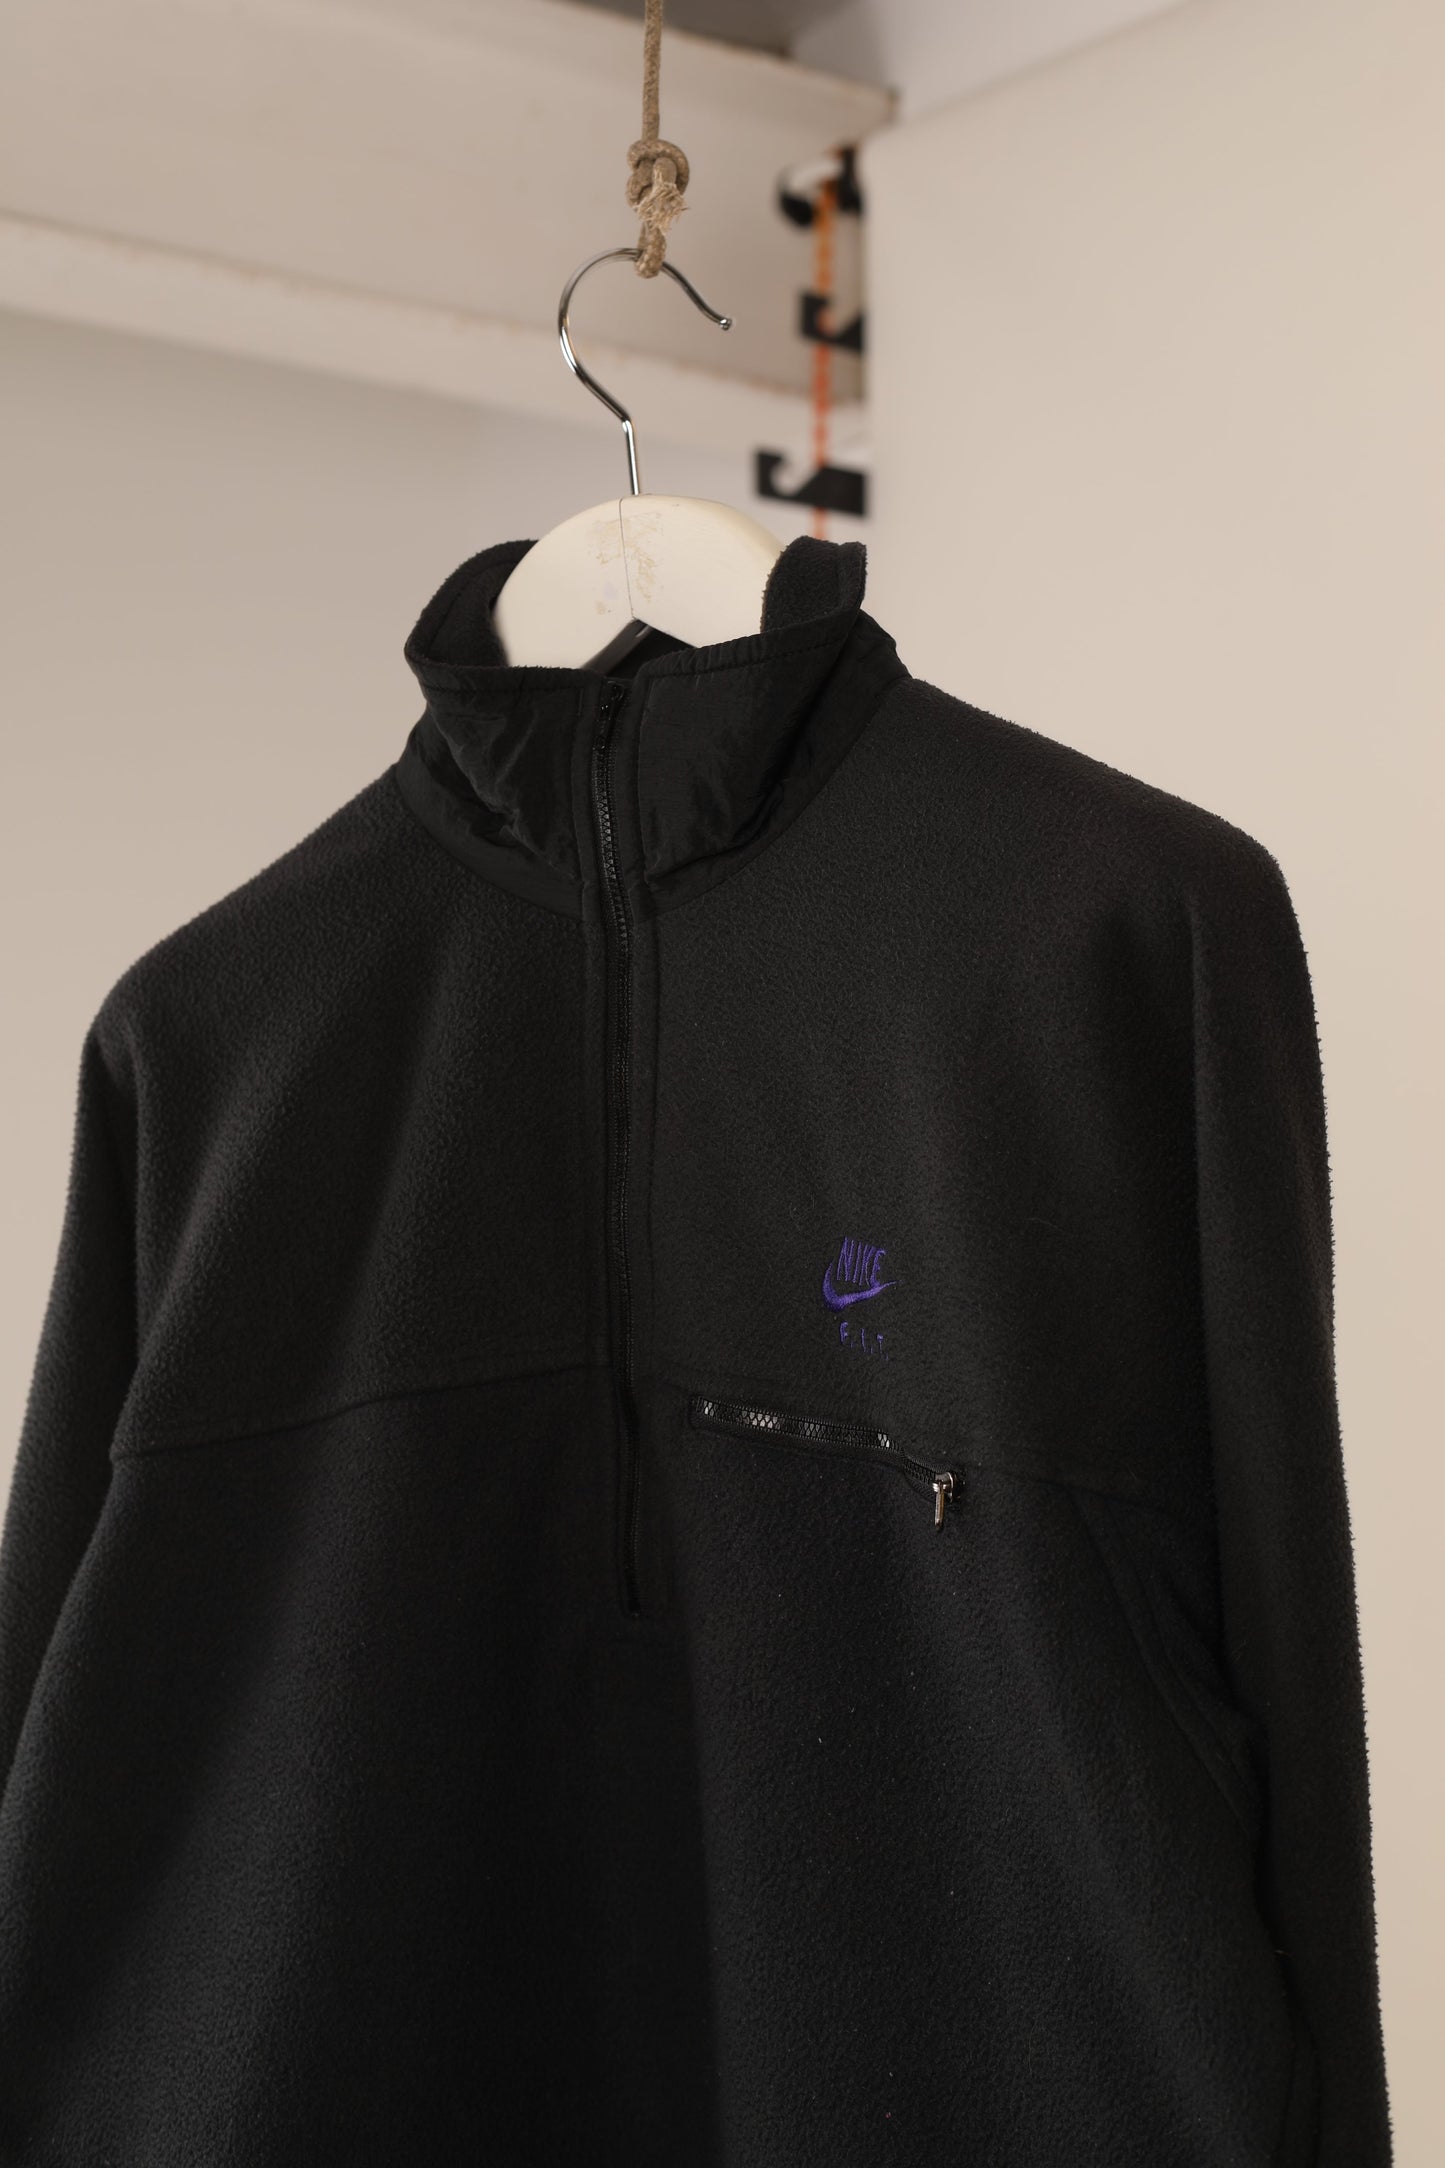 90s Nike FIT 1/4 zip fleece jacket